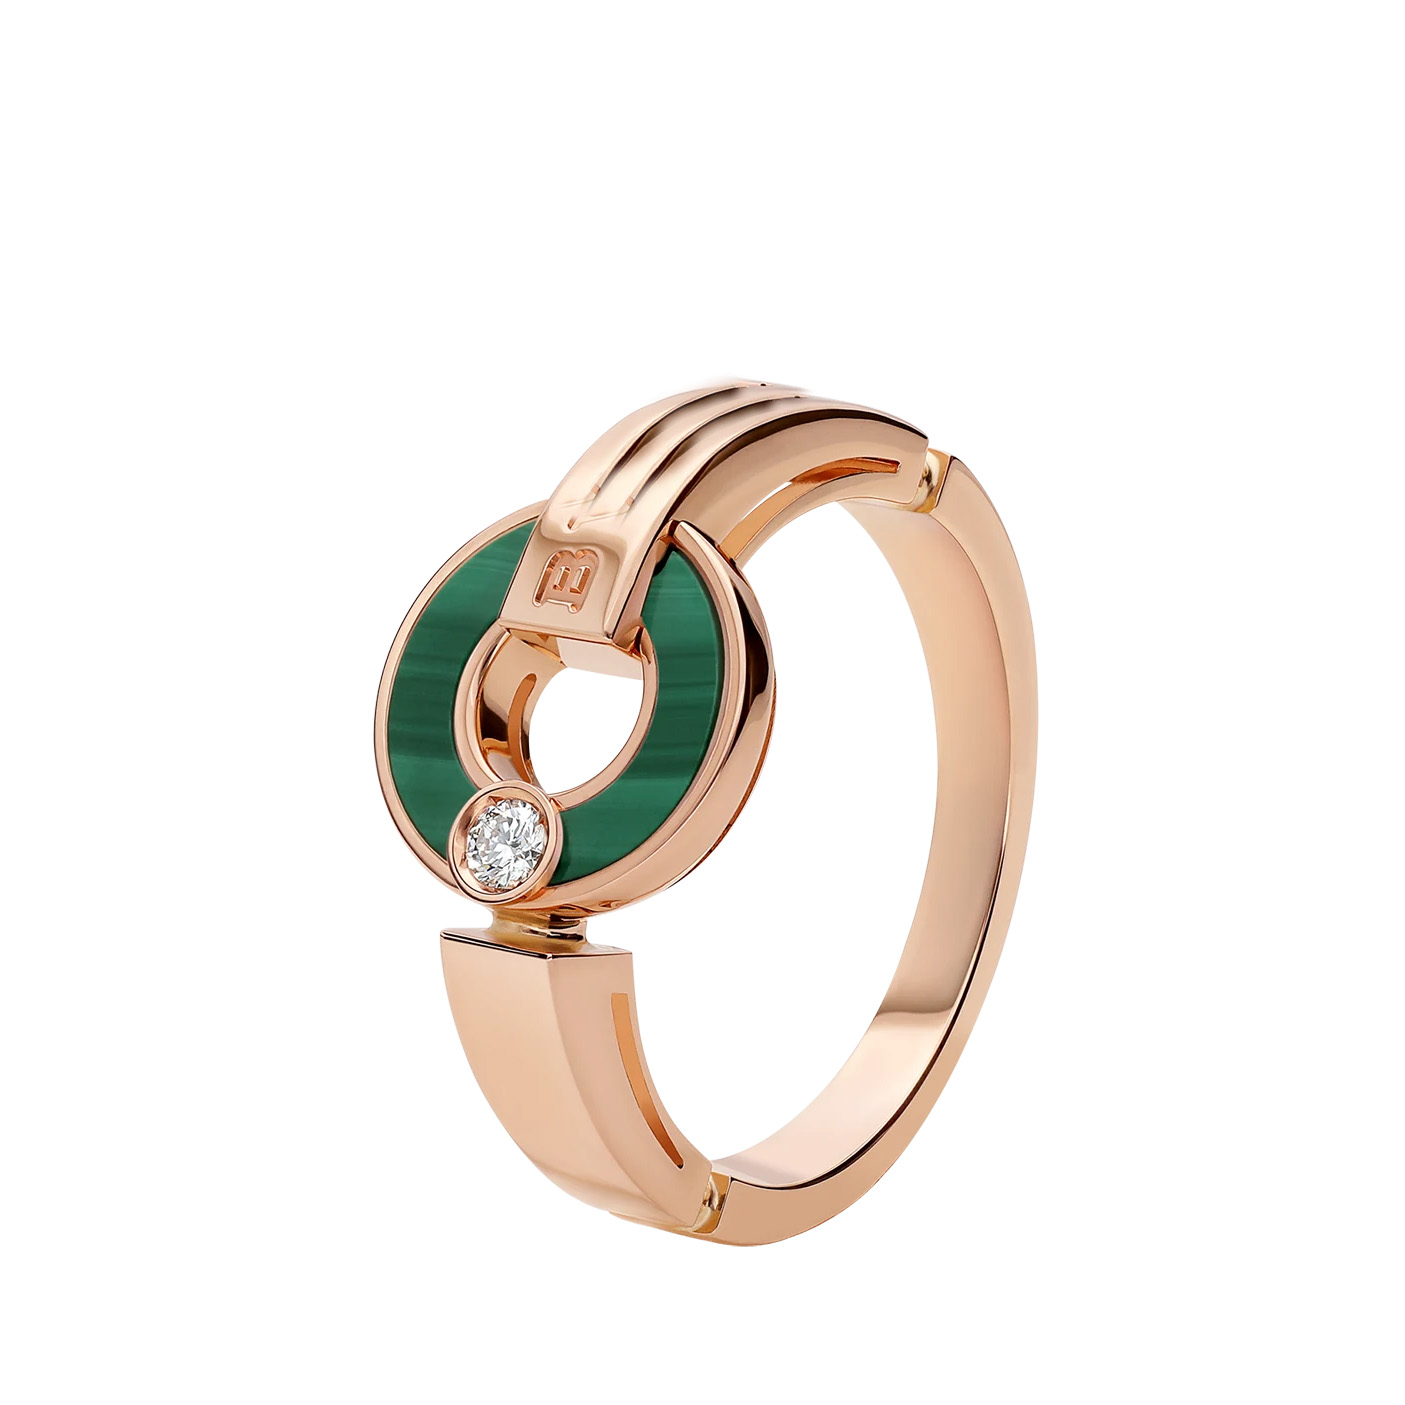 Hurtownia biżuterii OEM/ODM Projekt na zamówienie Ażurowy pierścionek z 18-karatowego różowego złota z elementami malachitu i okrągłym diamentem o szlifie brylantowym Producent biżuterii OEM